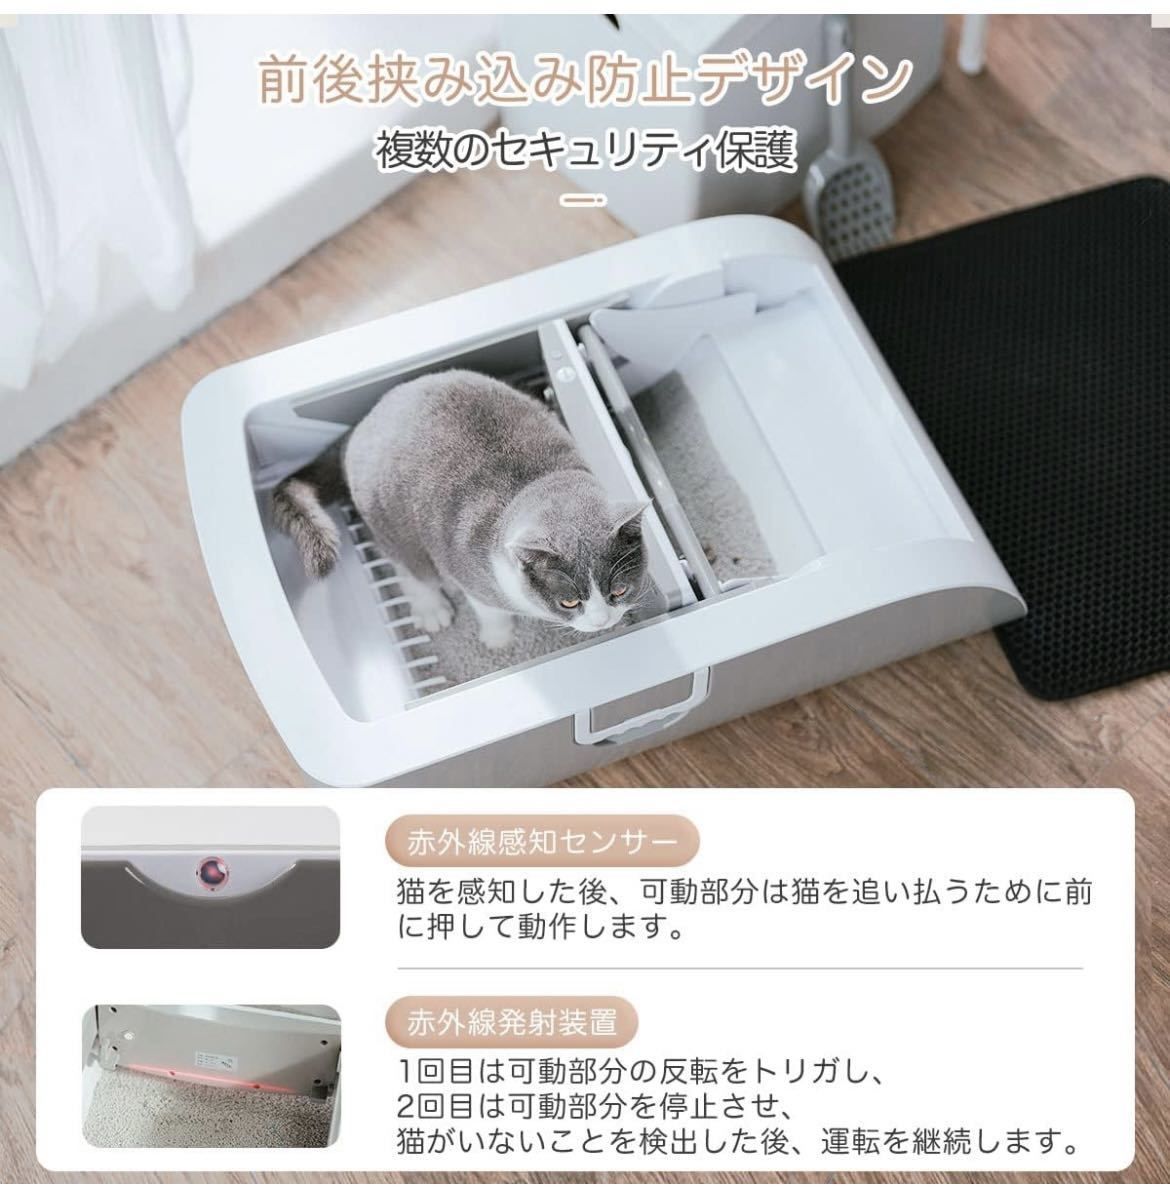 【大特価】Pandaloli 猫 トイレ 猫トイレ 自動 ねこ ネコ 多頭飼いまろshop商品一覧